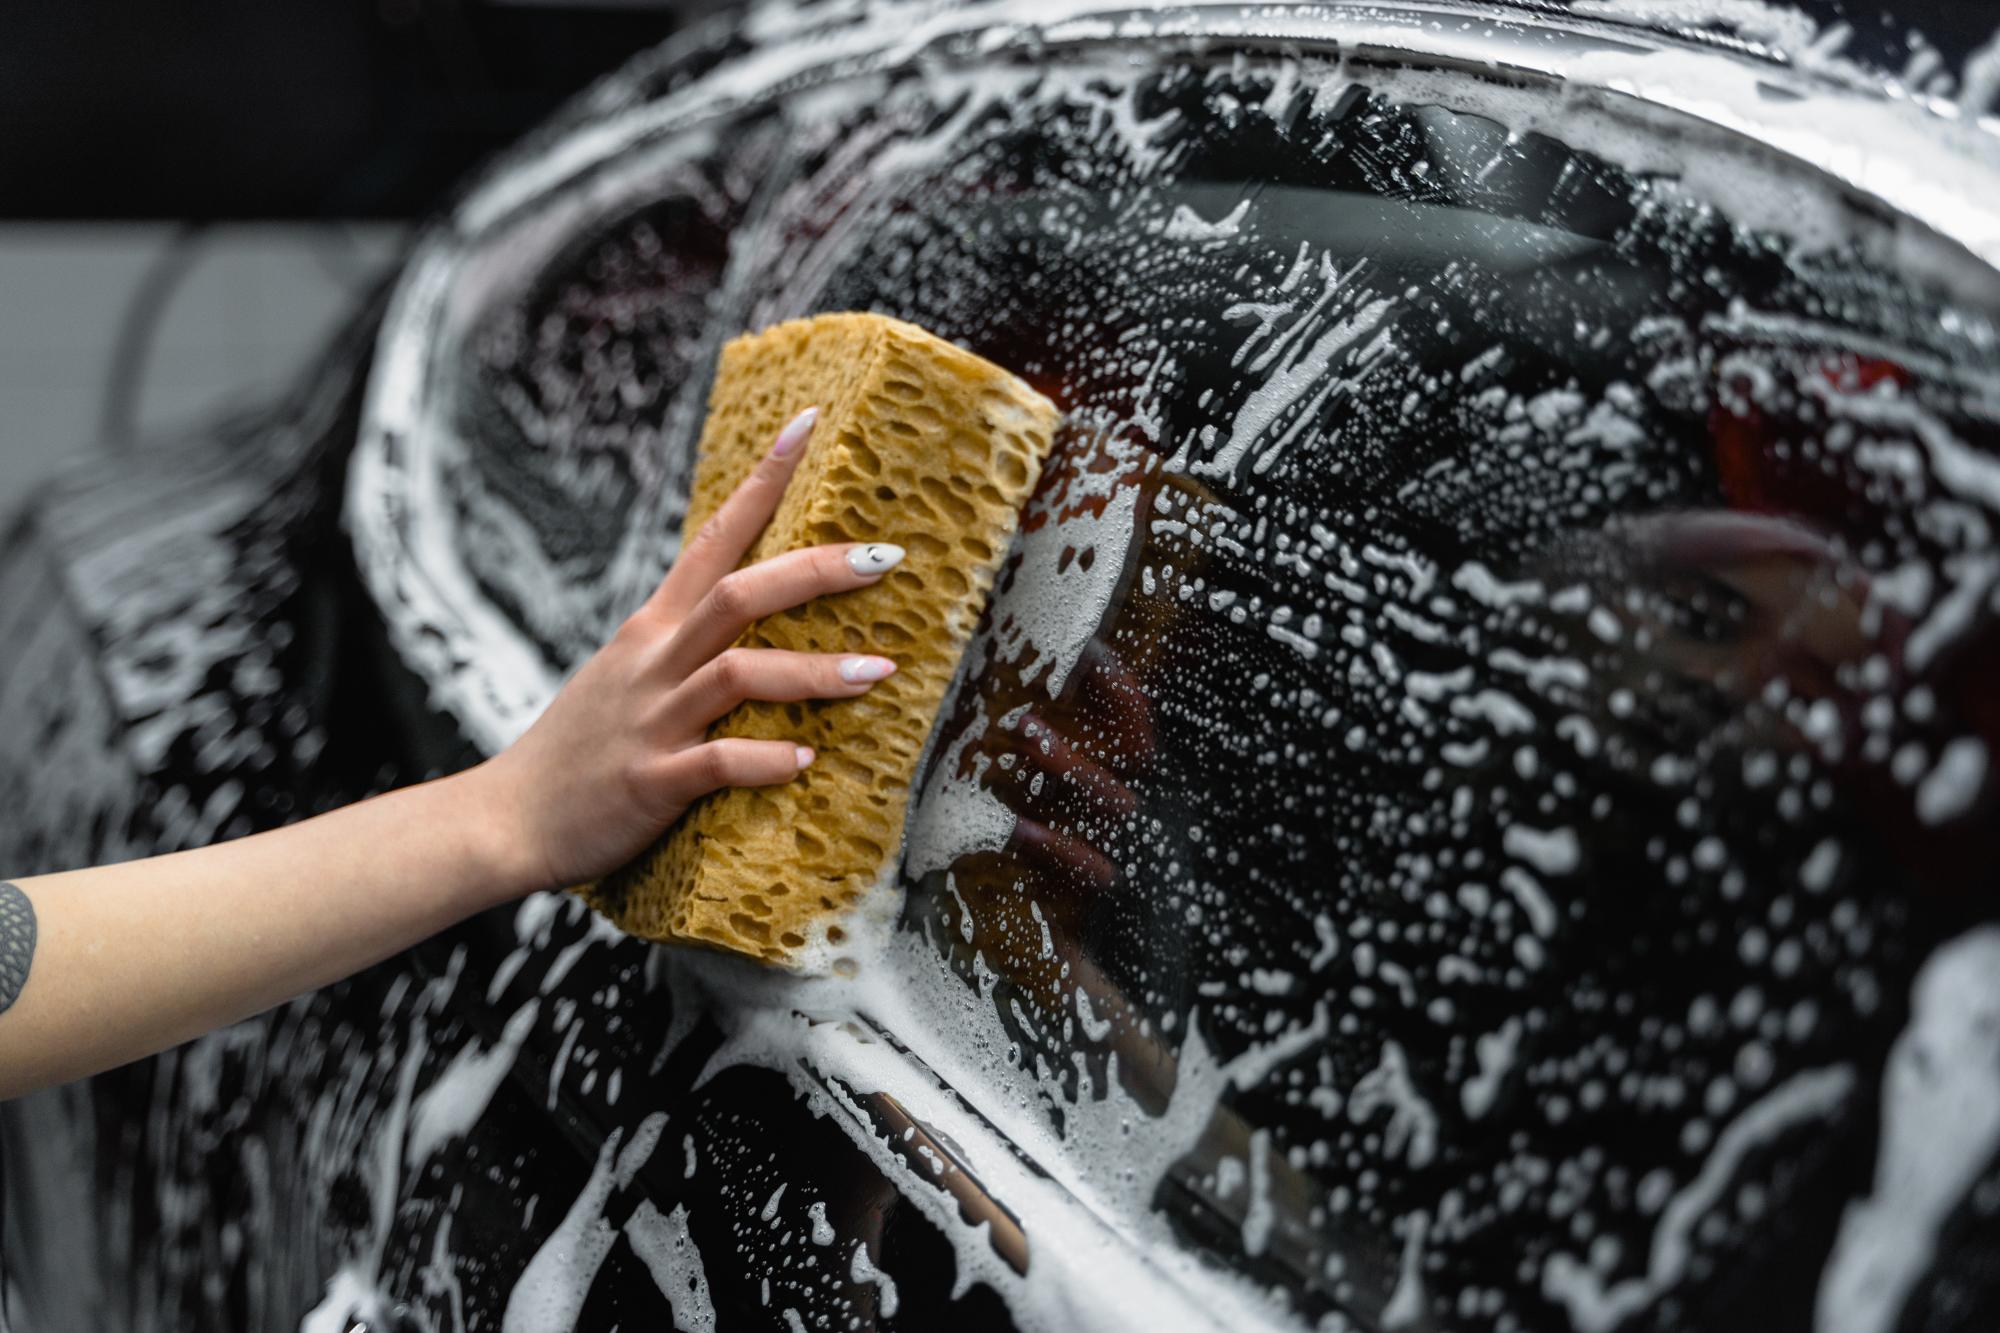 Cómo limpiar el coche con vinagre (y otros 19 trucos caseros